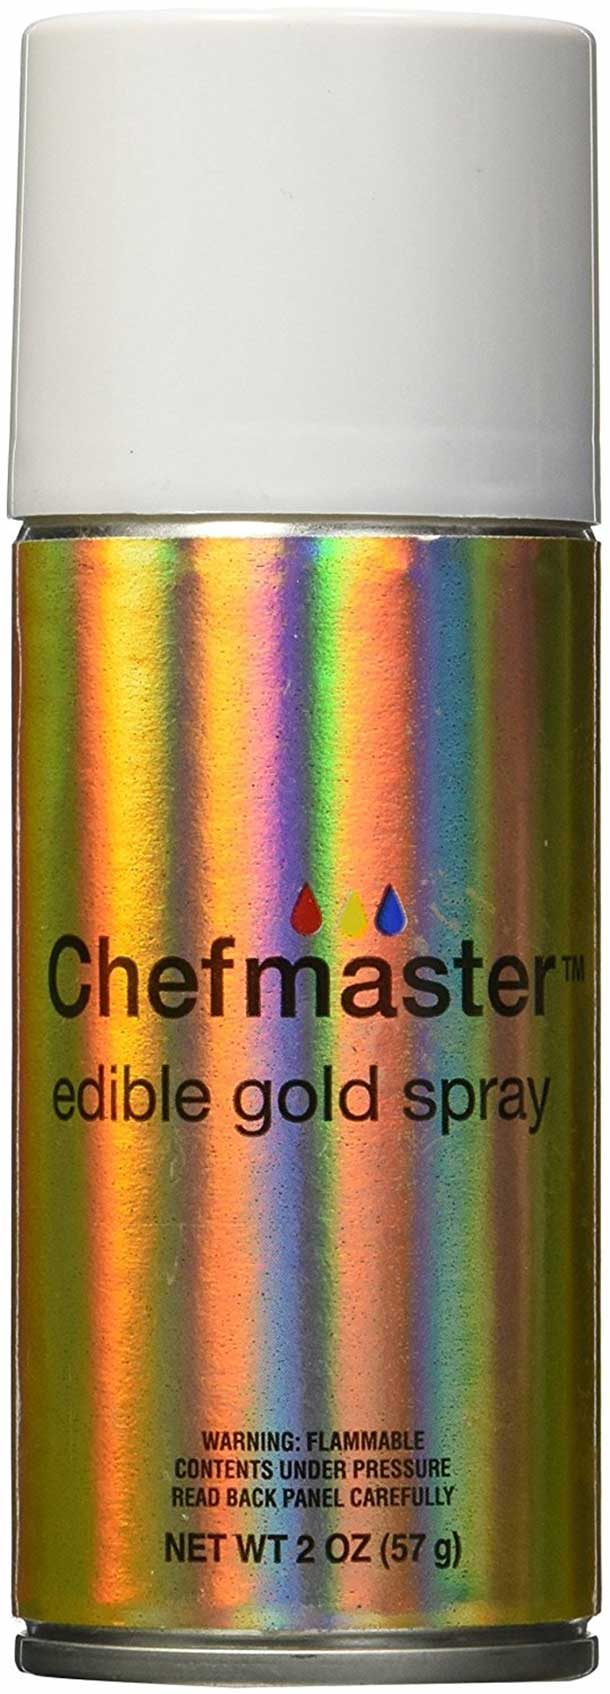 edible gold spray